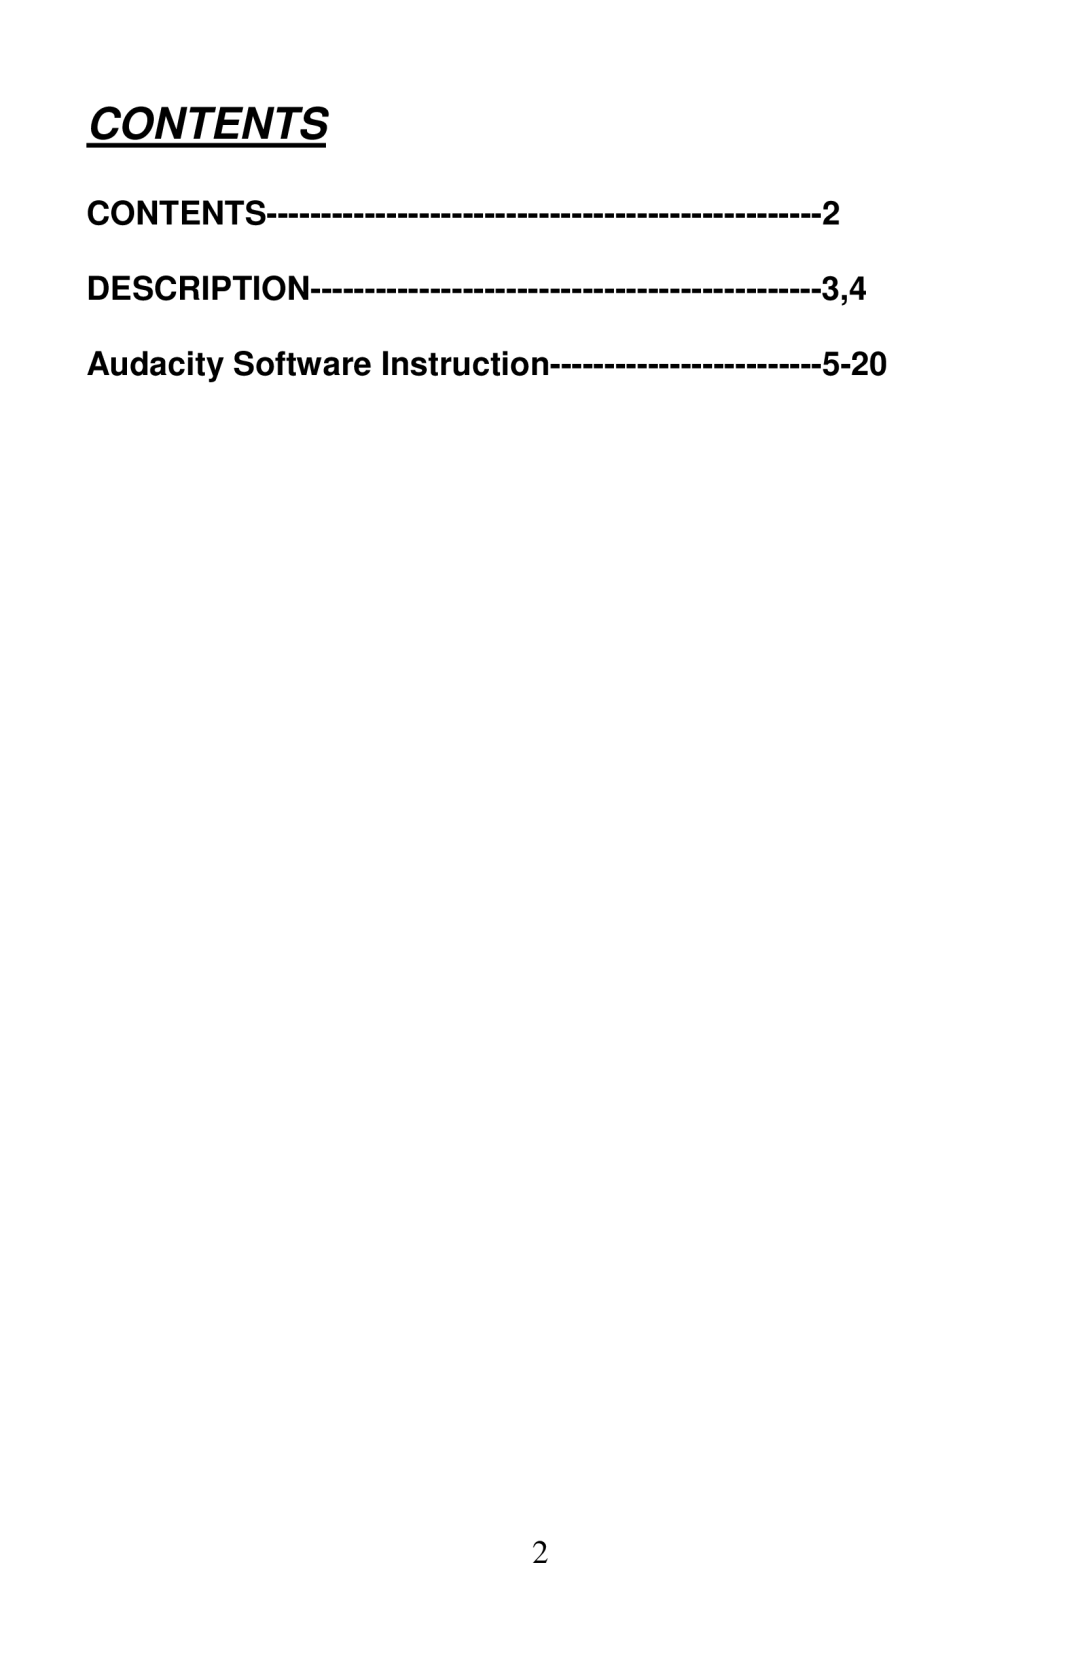 PYLE Audio PLTTB3U manual Contents, Description, Audacity Software Instruction, 5-20 